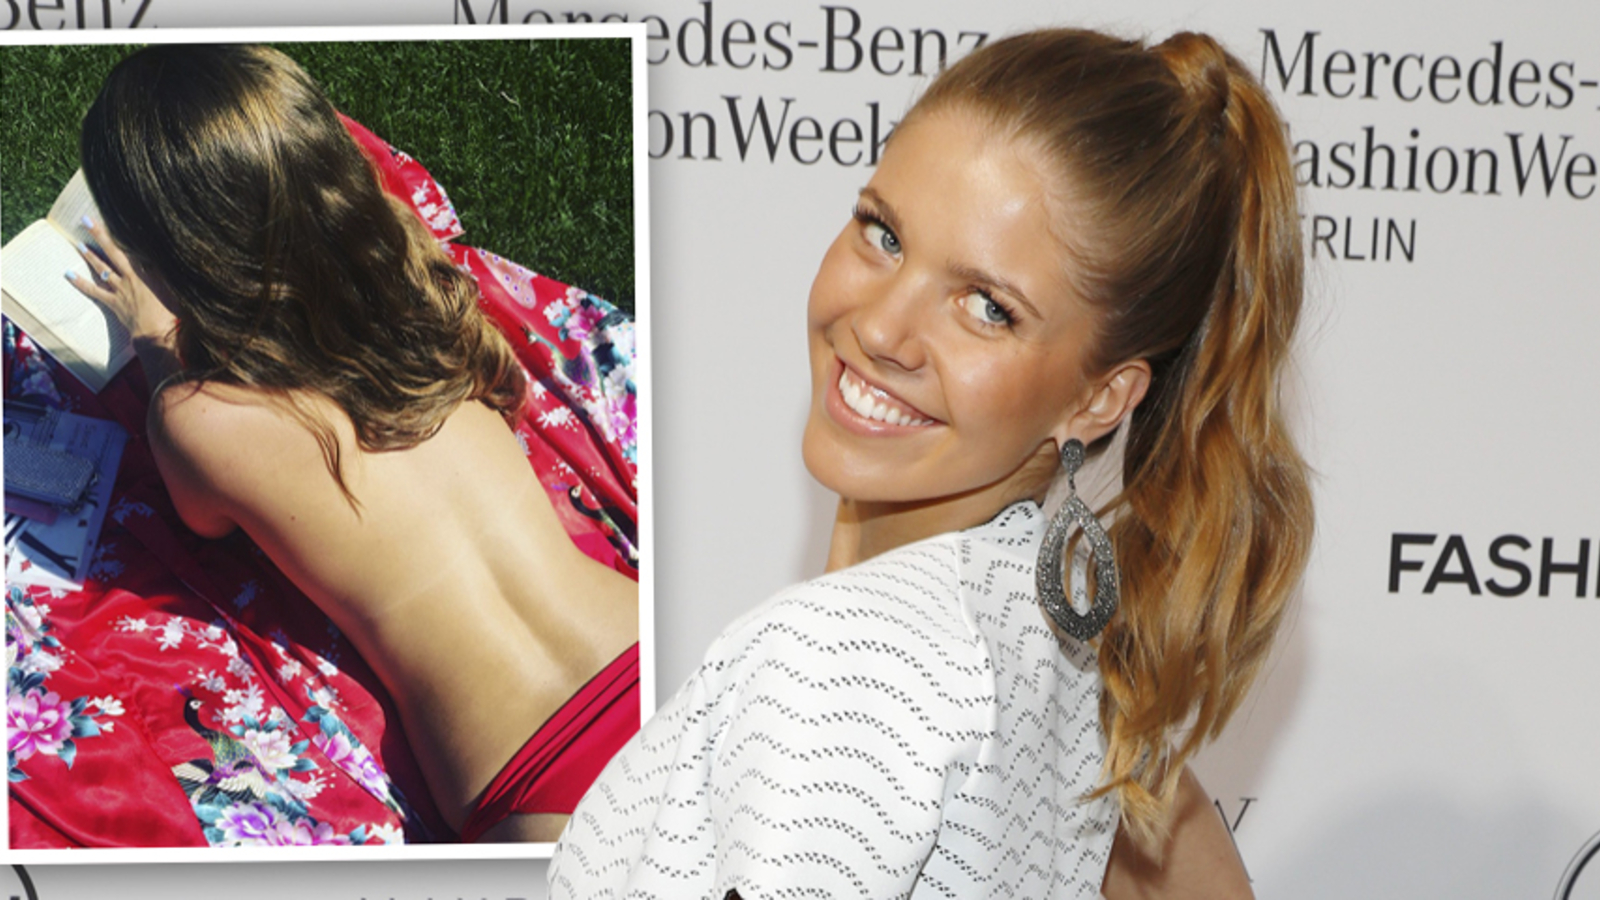 Karoline Schuch Nackt Oben Ohne Bilder Playboy Fotos Hot Sex Picture